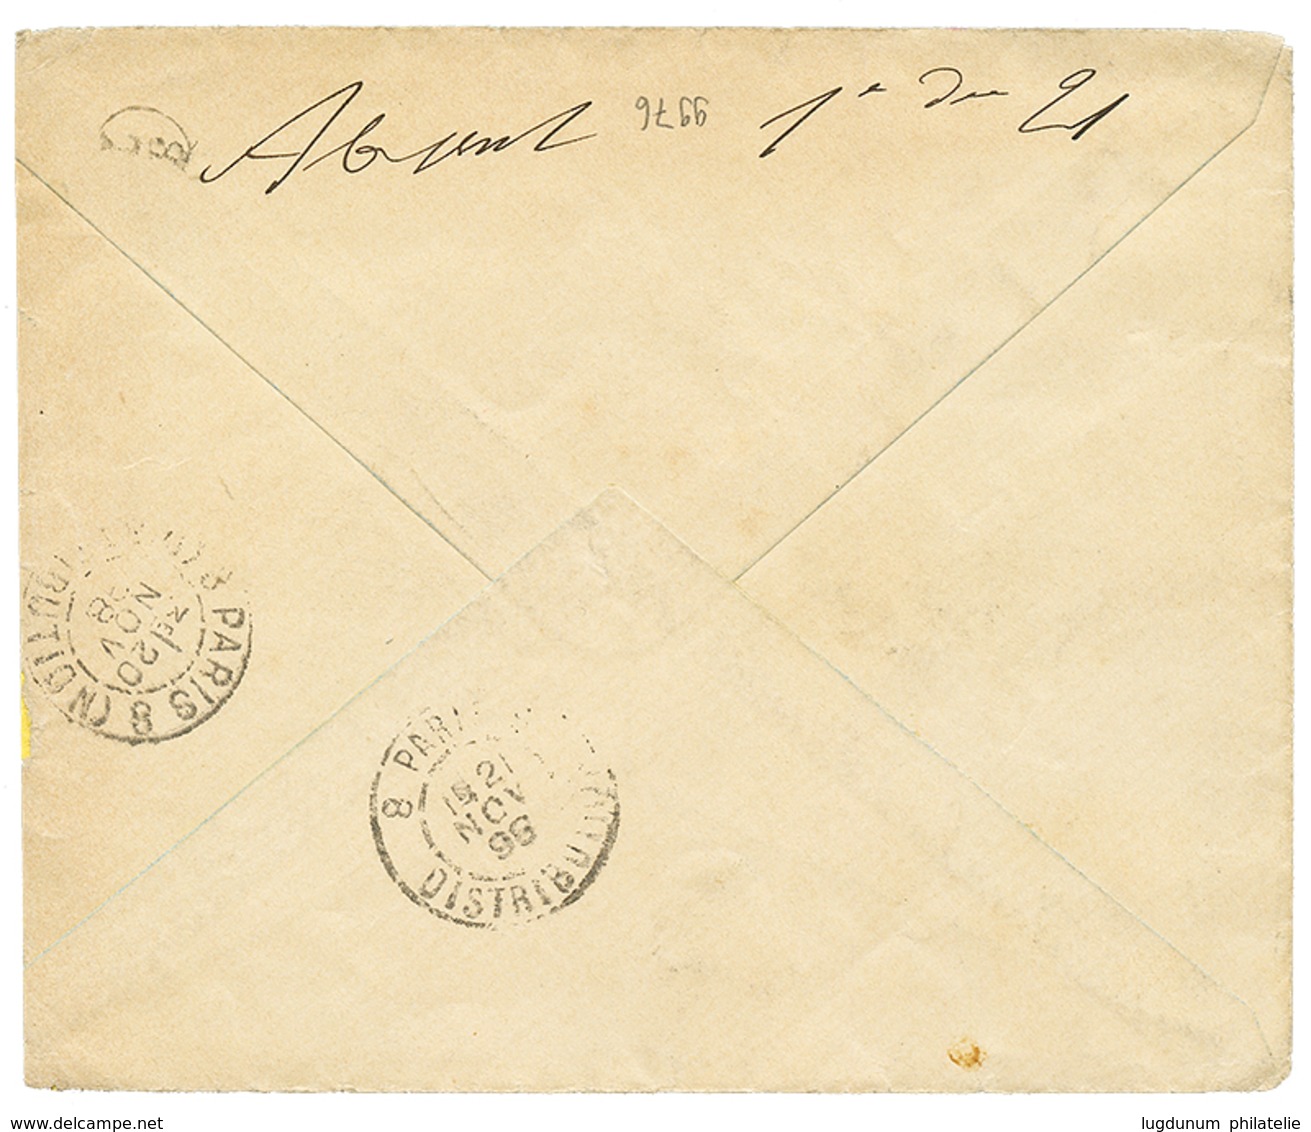 485 "METELINE" : 1898 2P Canc. METELINO On REGISTERED Envelope To FRANCE. Vf. - Eastern Austria